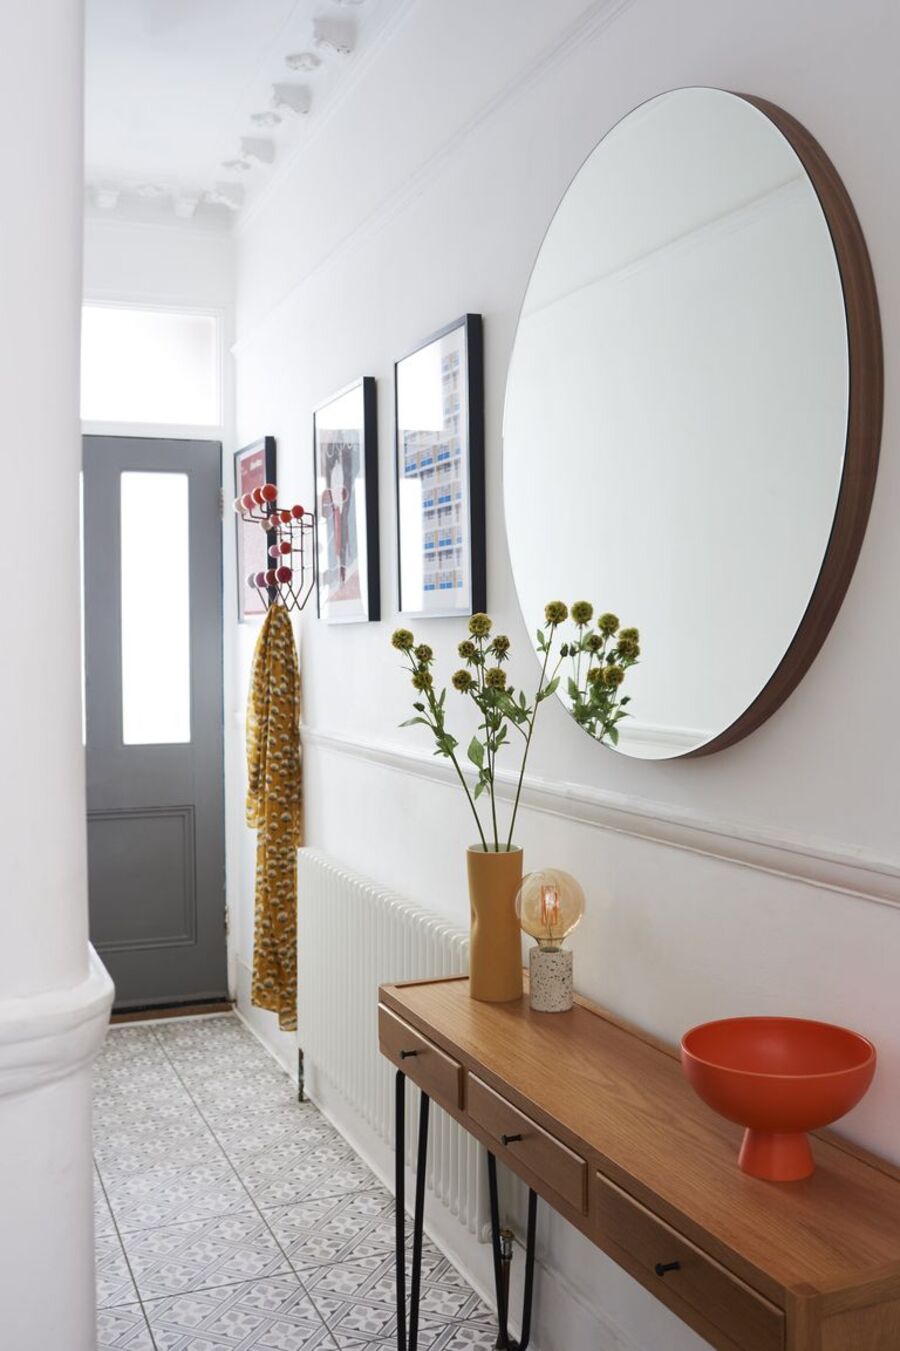 Pasillo de muros blancos con un gran espejo redondo en una de sus paredes, debajo hay un arrimo de madera con patas metálicas negras. Al costado del espejo hay tres cuadros con ilustraciones coloridas y un perchero rojo.